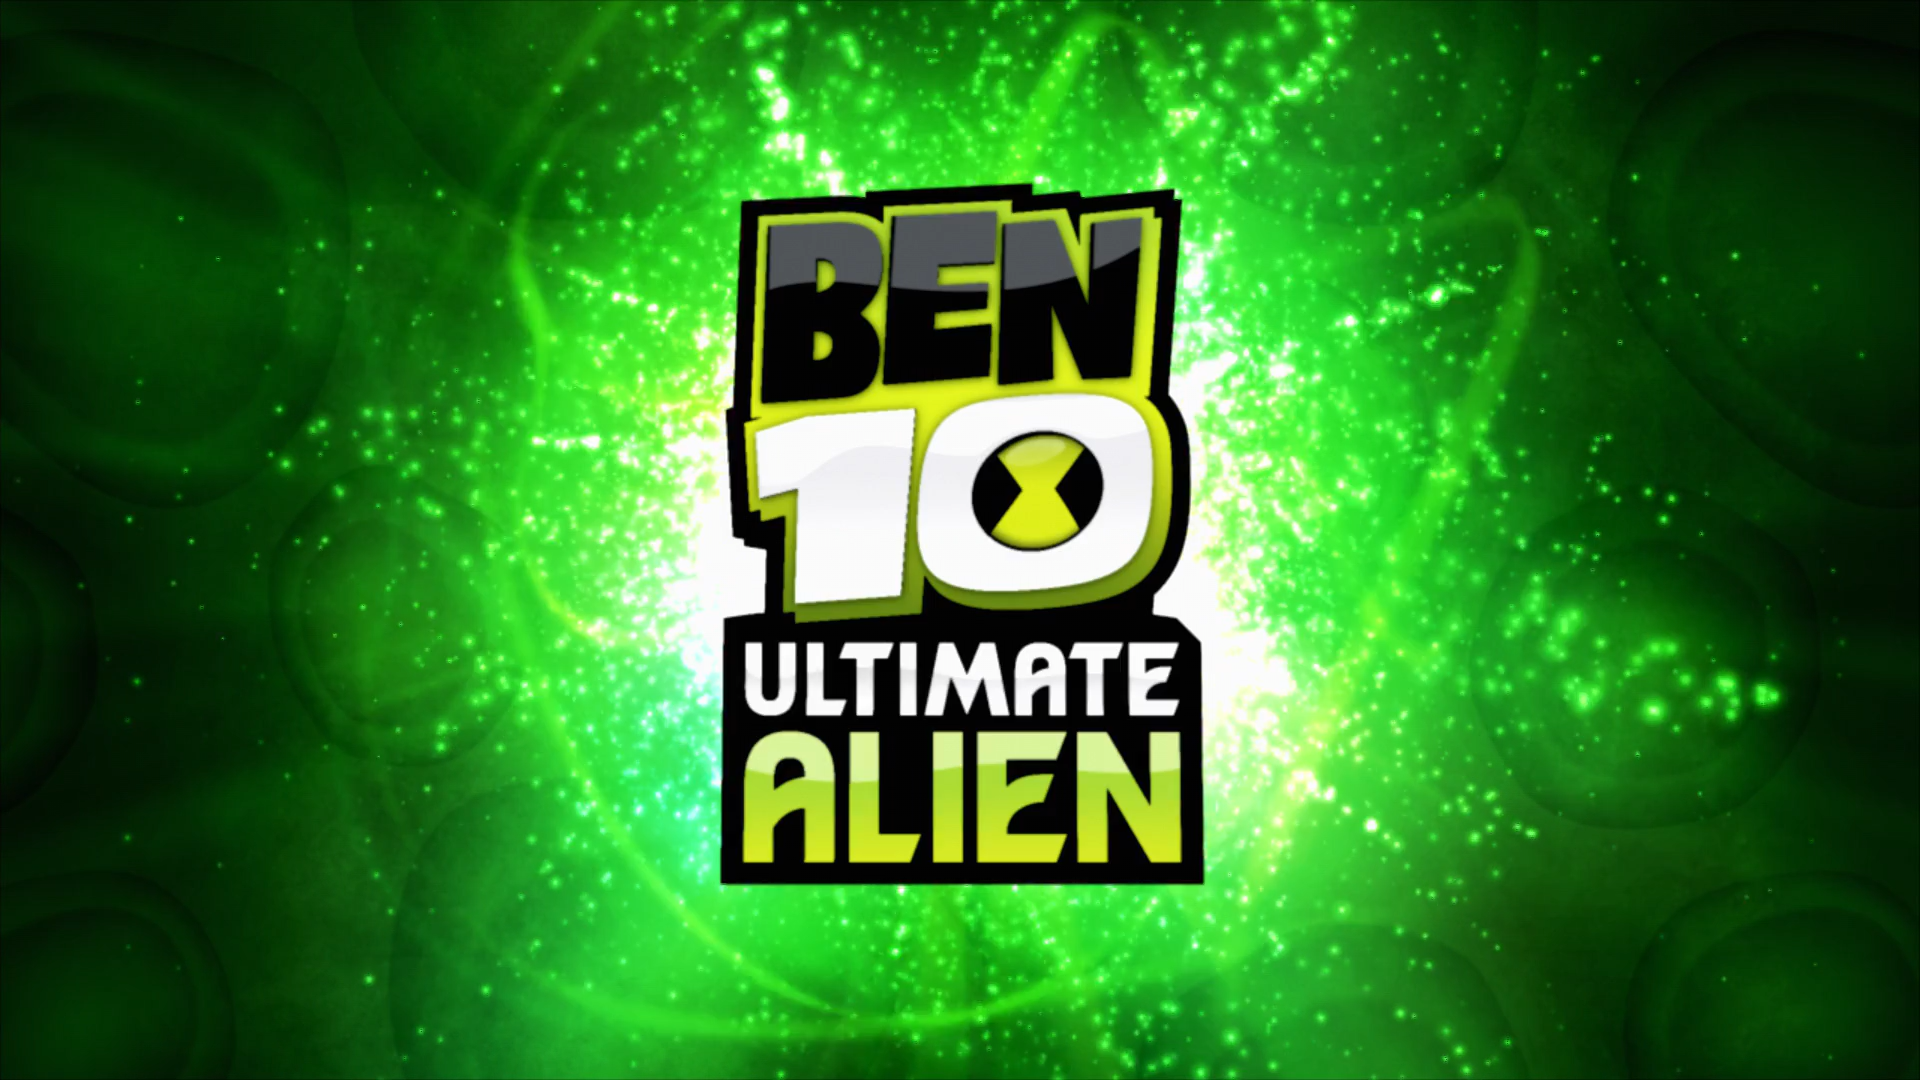 Ben 10: Ultimate Alien, Cartoon Network